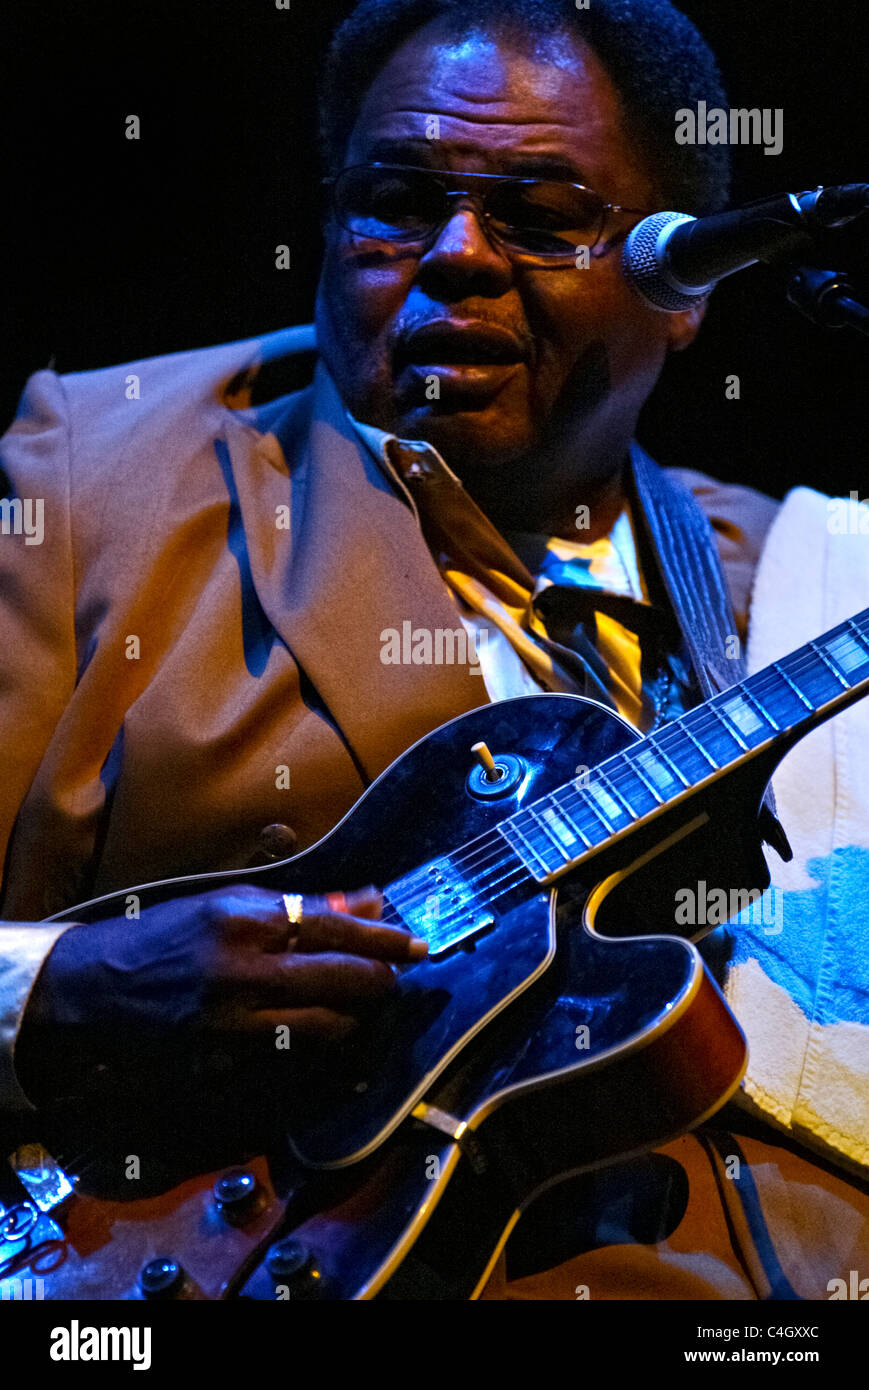 Chanteur et guitariste de blues Roscoe Chenier Bluesband live sur scène Banque D'Images